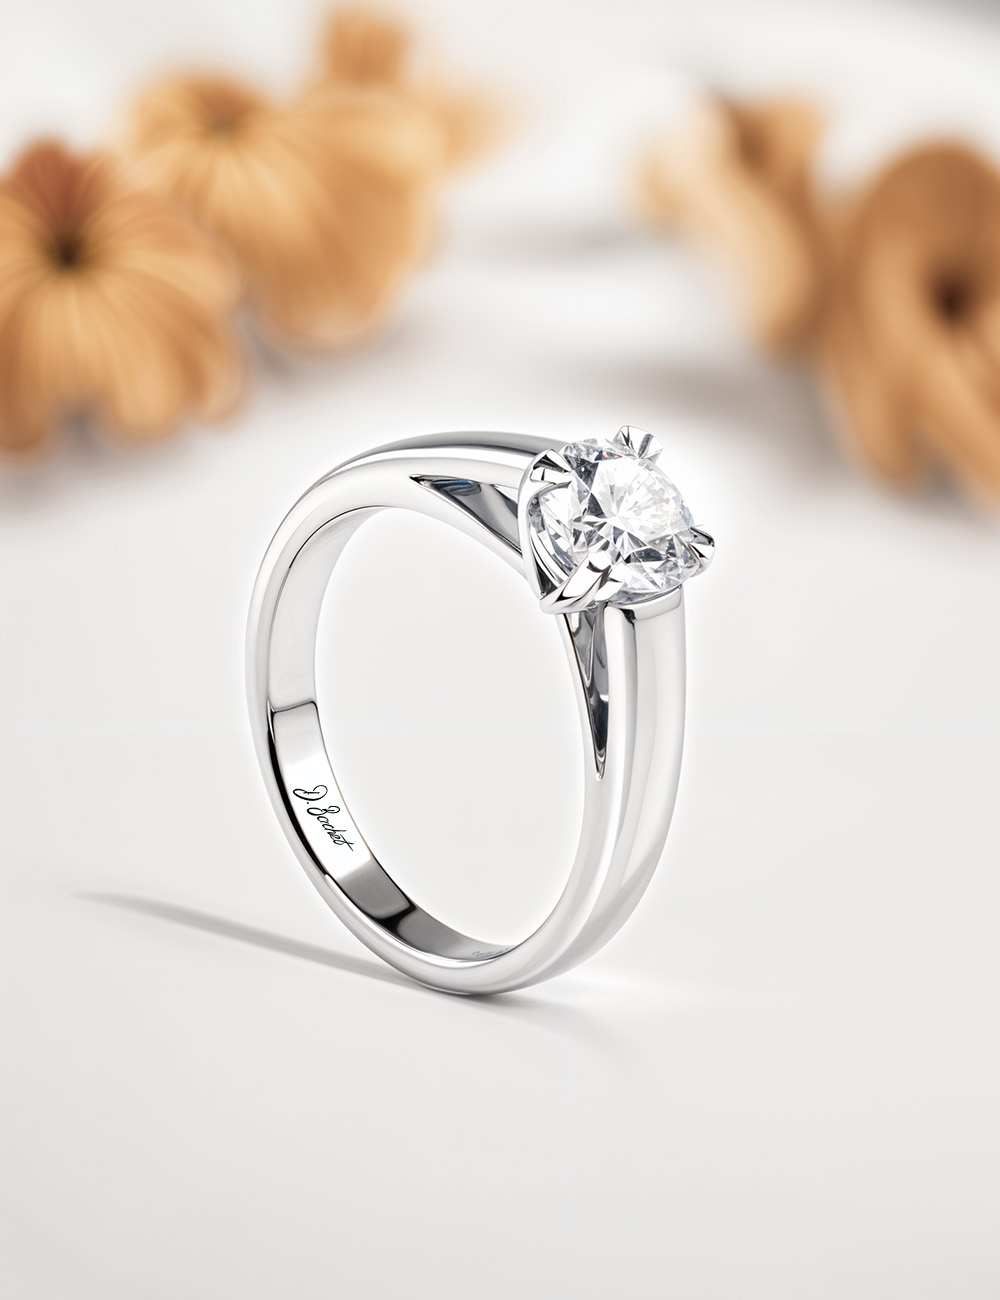 Bague de fiançailles solitaire D.Bachet en platine : diamant blanc 0.50 carat, monture épurée et contemporaine, serti éthique.